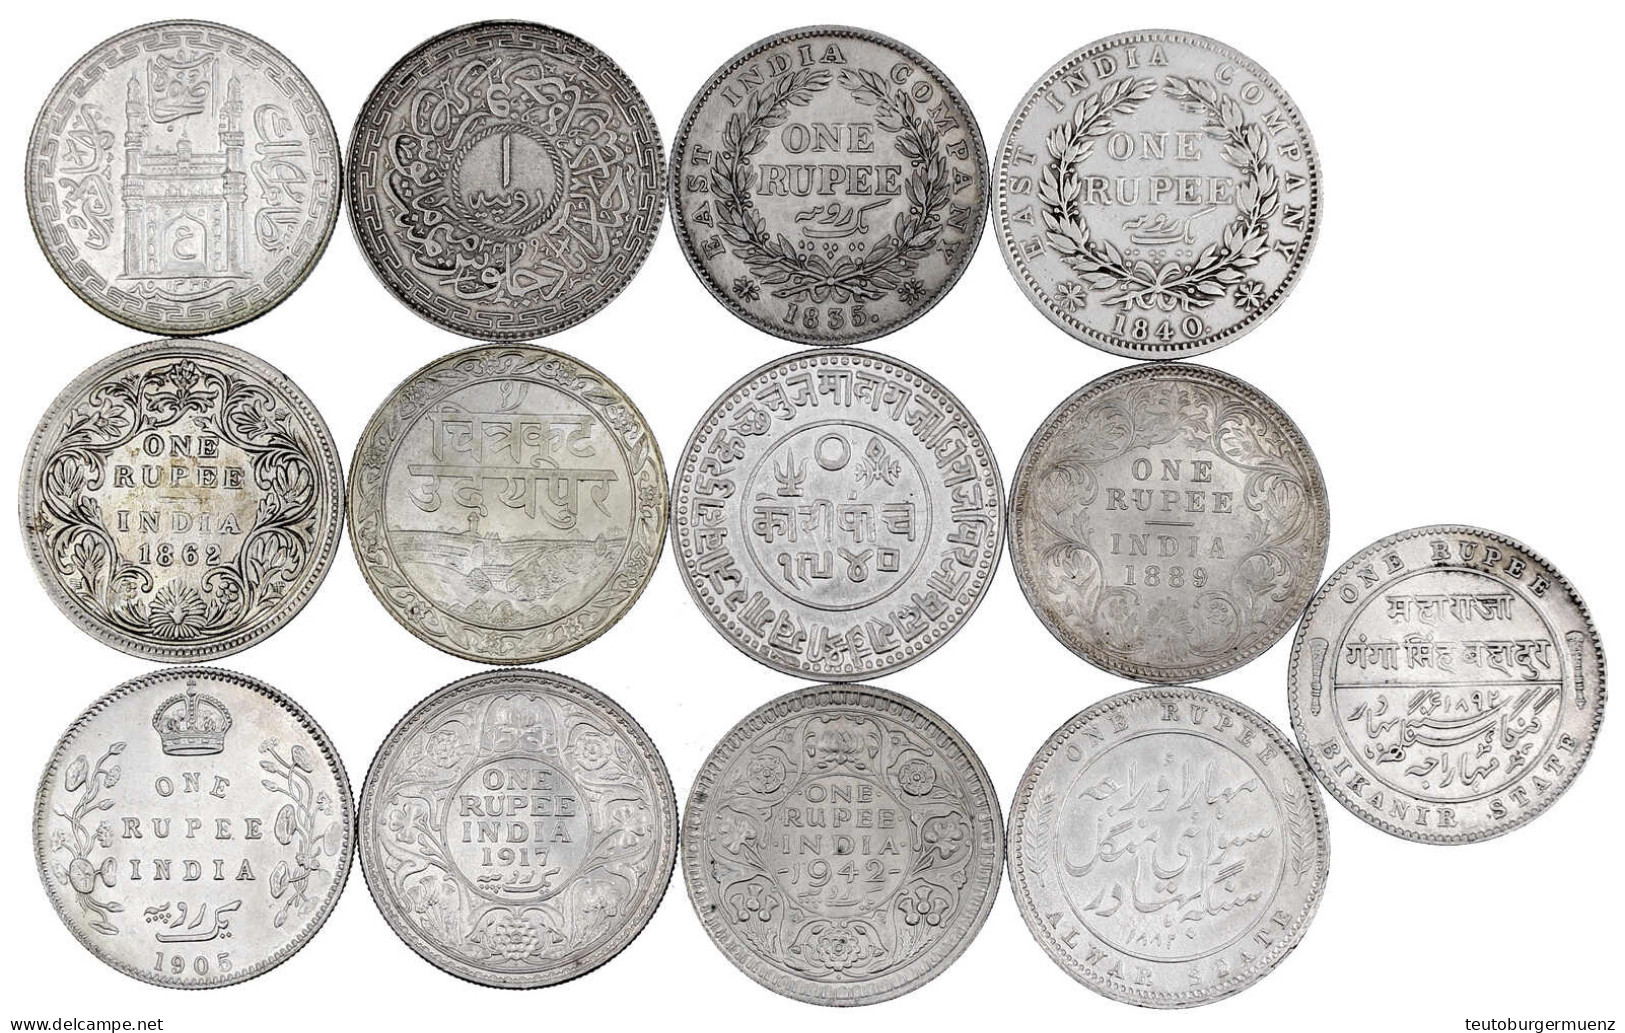 13 Silbermünzen: Rupien Britisch-Indien 1835, 1840, 1862, 1889, 1905, 1917, 1942, Alwar 1882, Bikanir 1892, Hyderabad AH - Indien